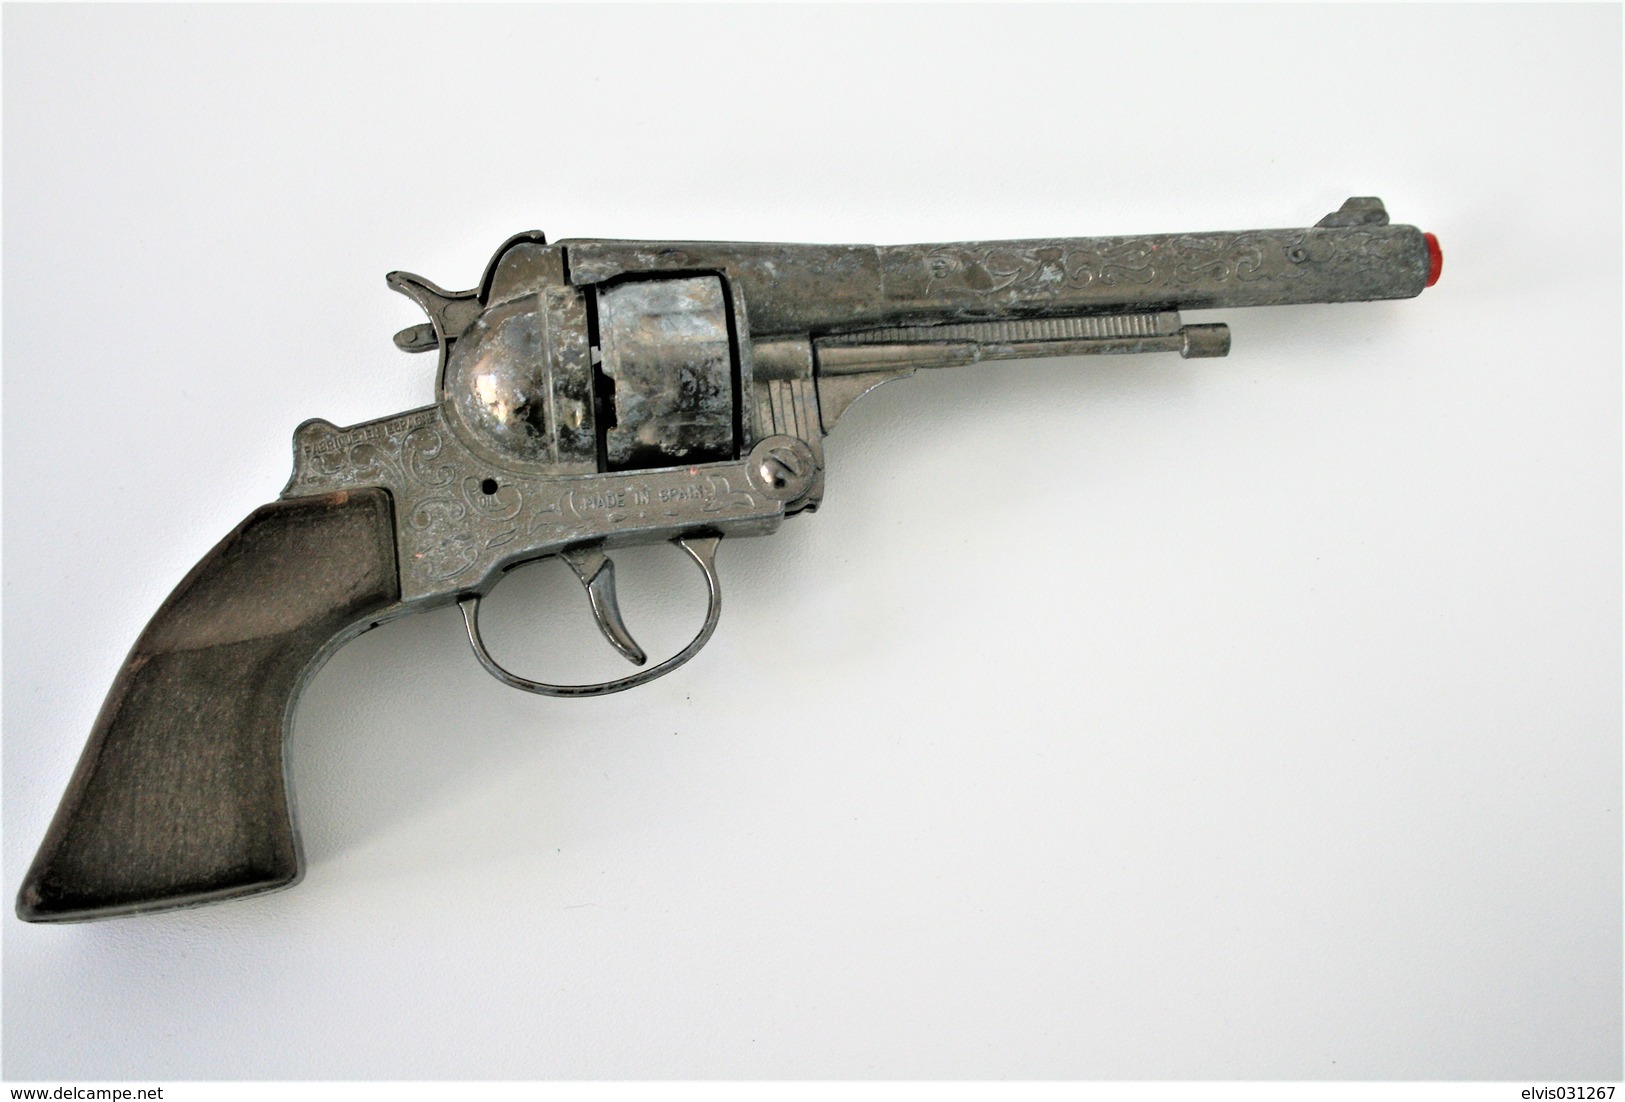 Armas de Colección - Vintage TOY GUN : GONHER NO. 122 - L=24.5cm - 19??s -  Spain - keywords : Cap Gun - Cork gun - Rifle - Revolver - Pistol